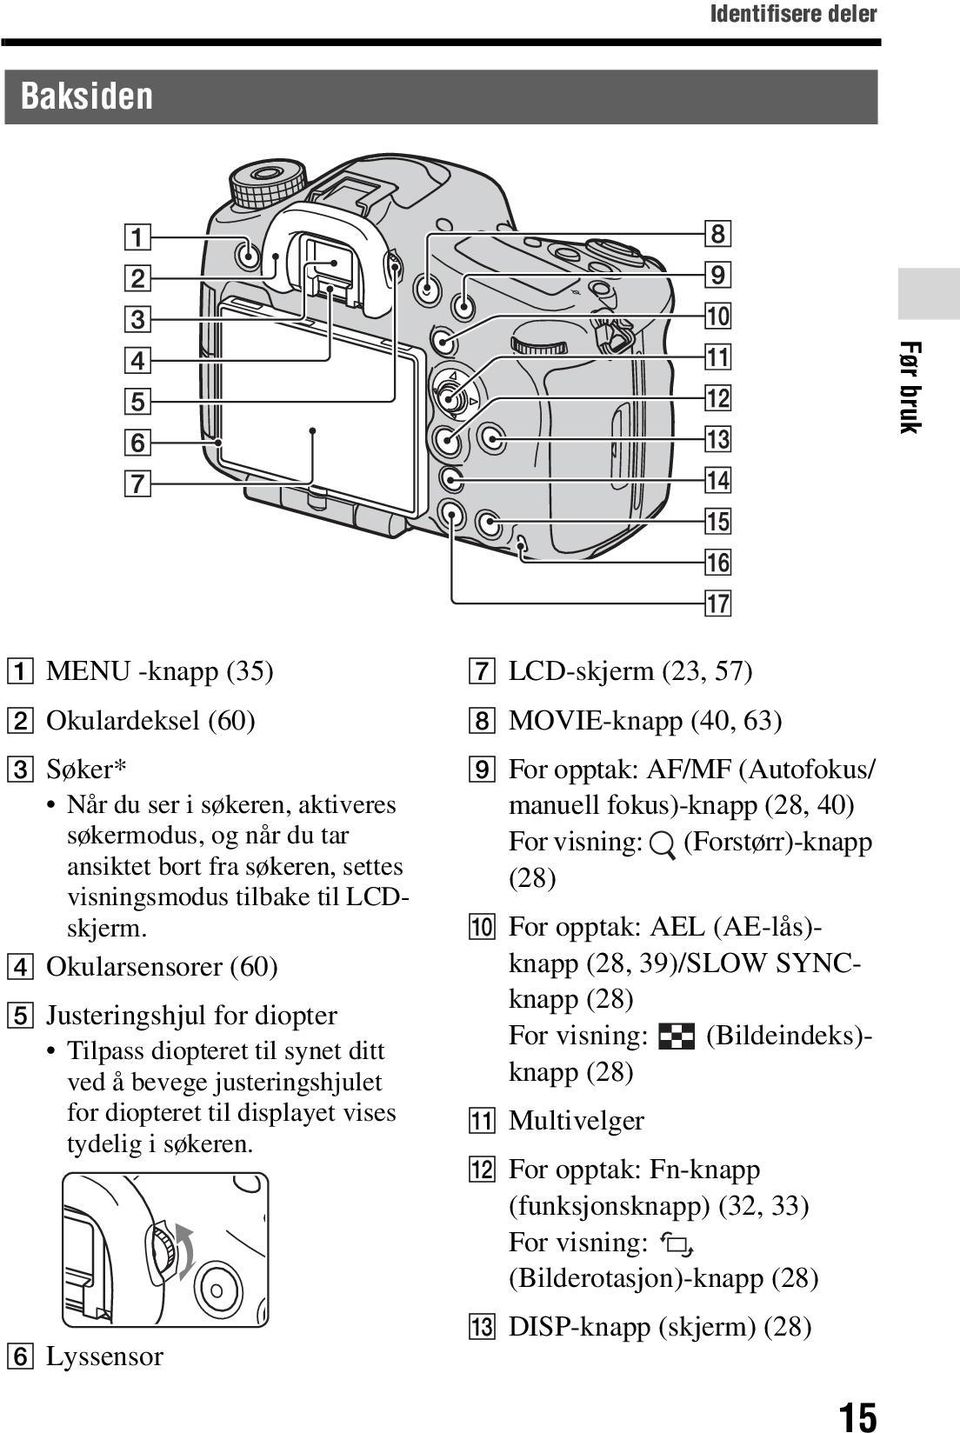 F Lyssensor G LCD-skjerm (23, 57) H MOVIE-knapp (40, 63) I For opptak: AF/MF (Autofokus/ manuell fokus)-knapp (28, 40) For visning: (Forstørr)-knapp (28) J For opptak: AEL (AE-lås)- knapp (28,